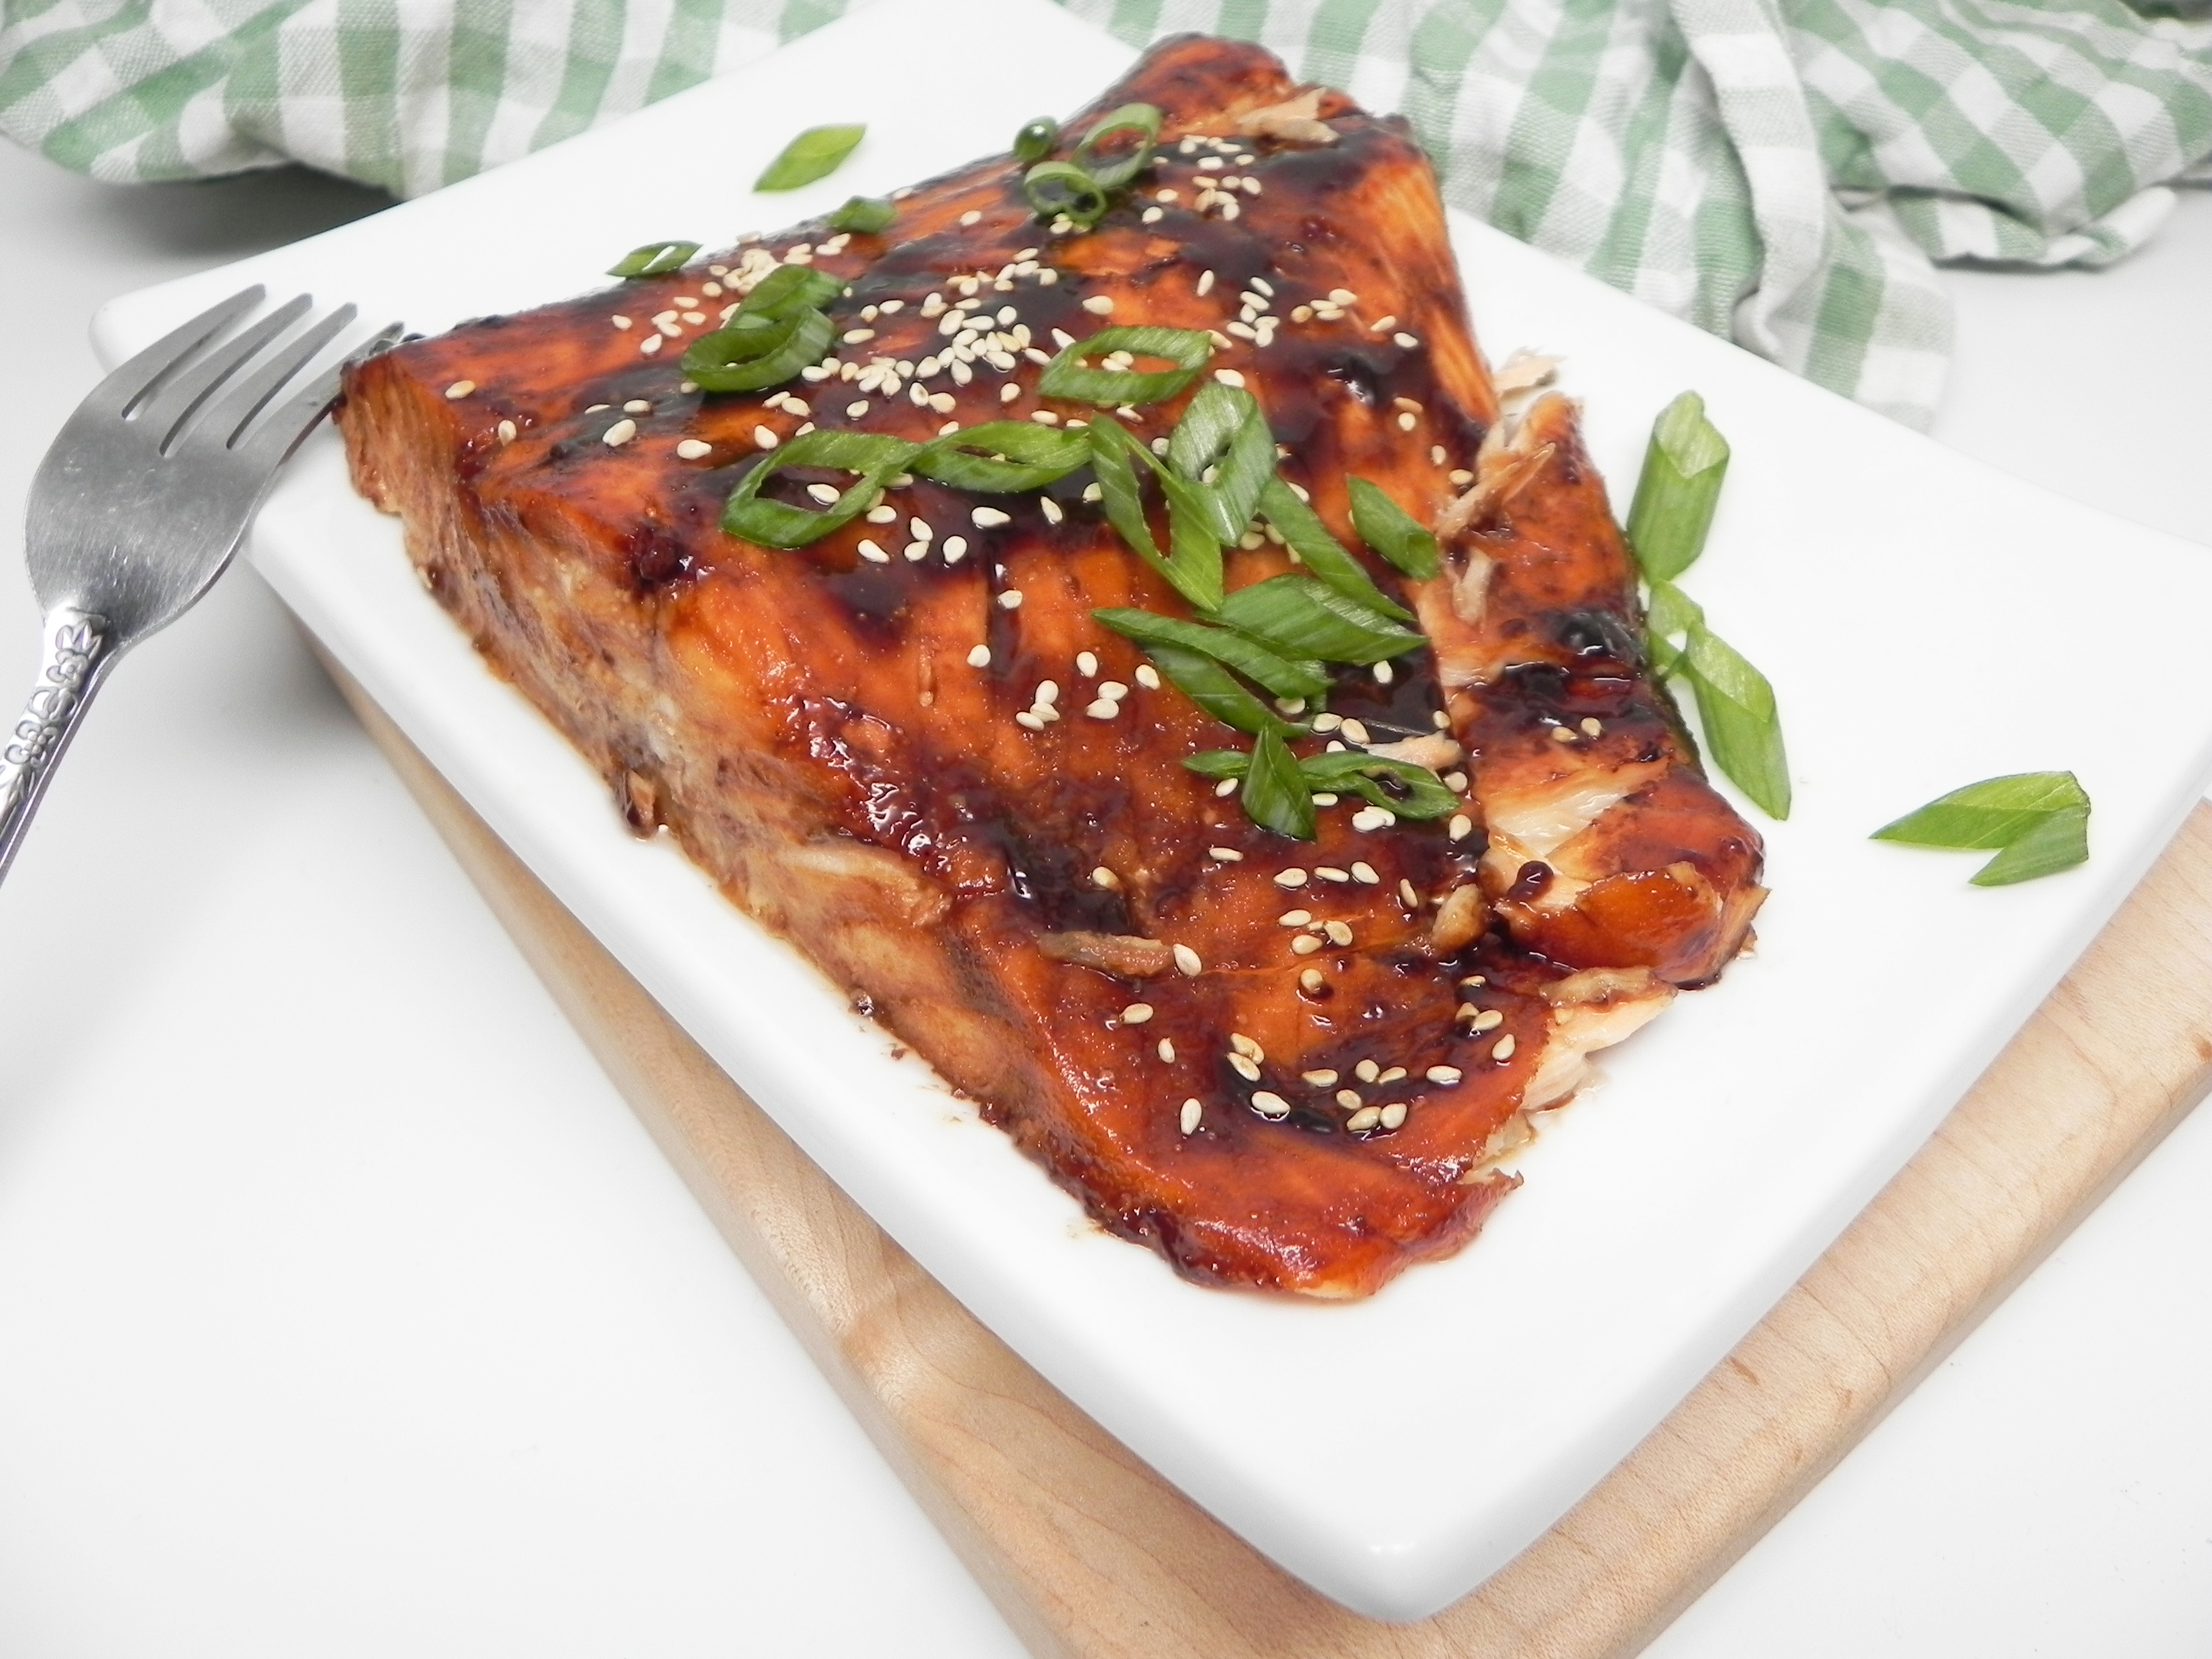 Broiled Salmon with Homemade Teriyaki Glaze